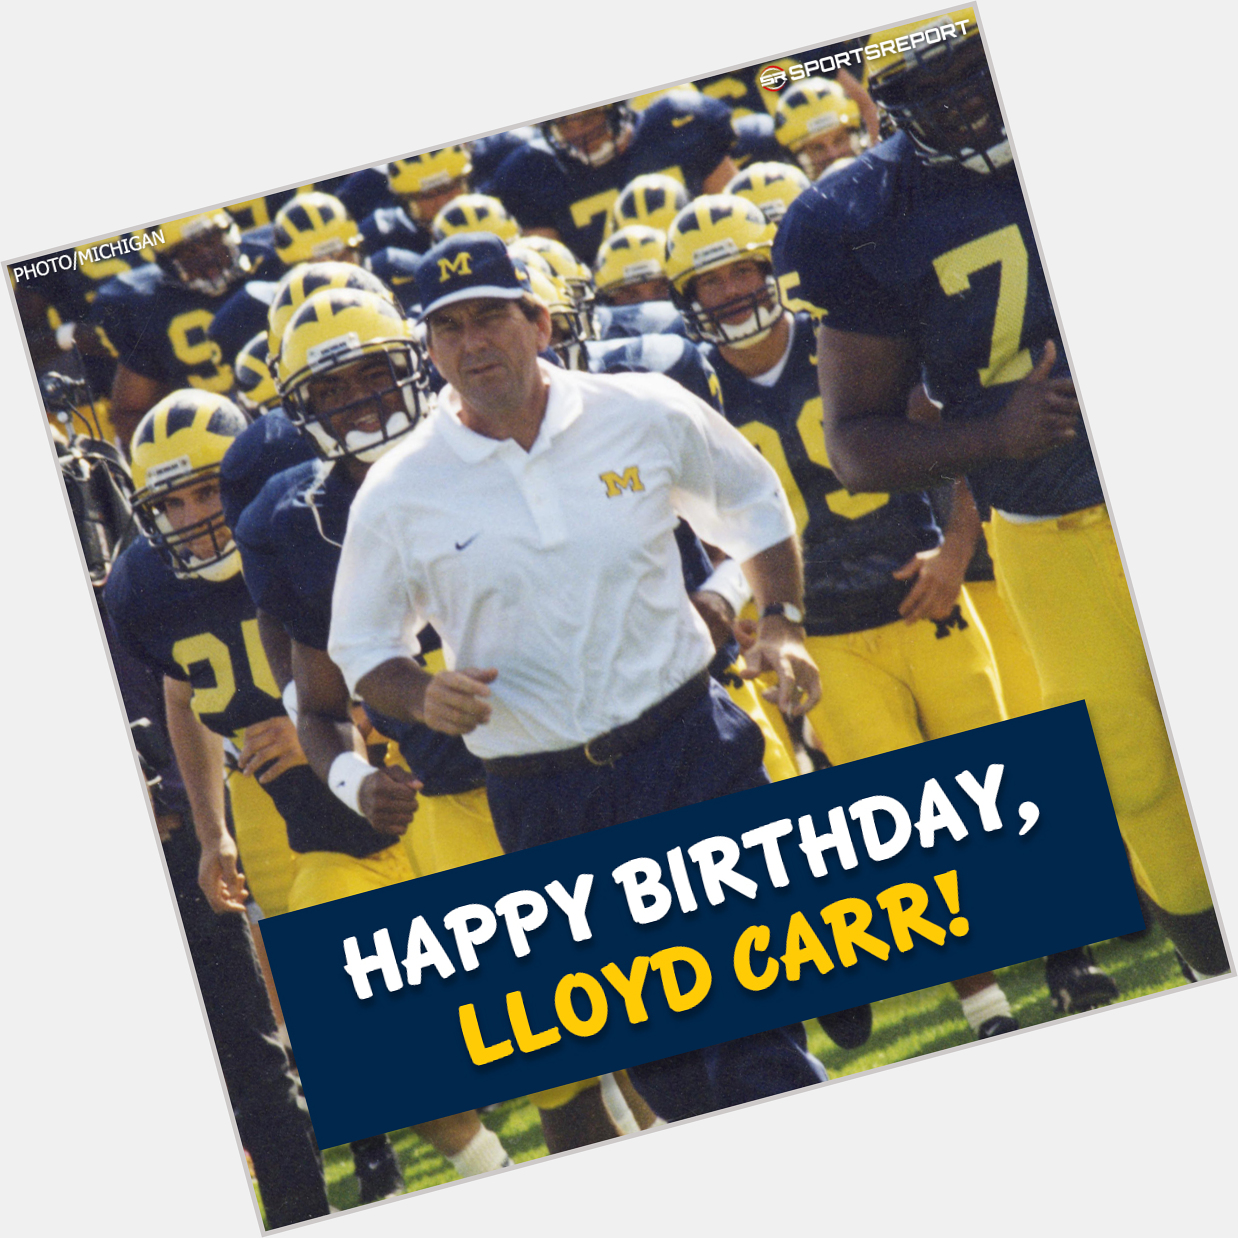 Happy Birthday to Coaching Legend, Lloyd Carr! 